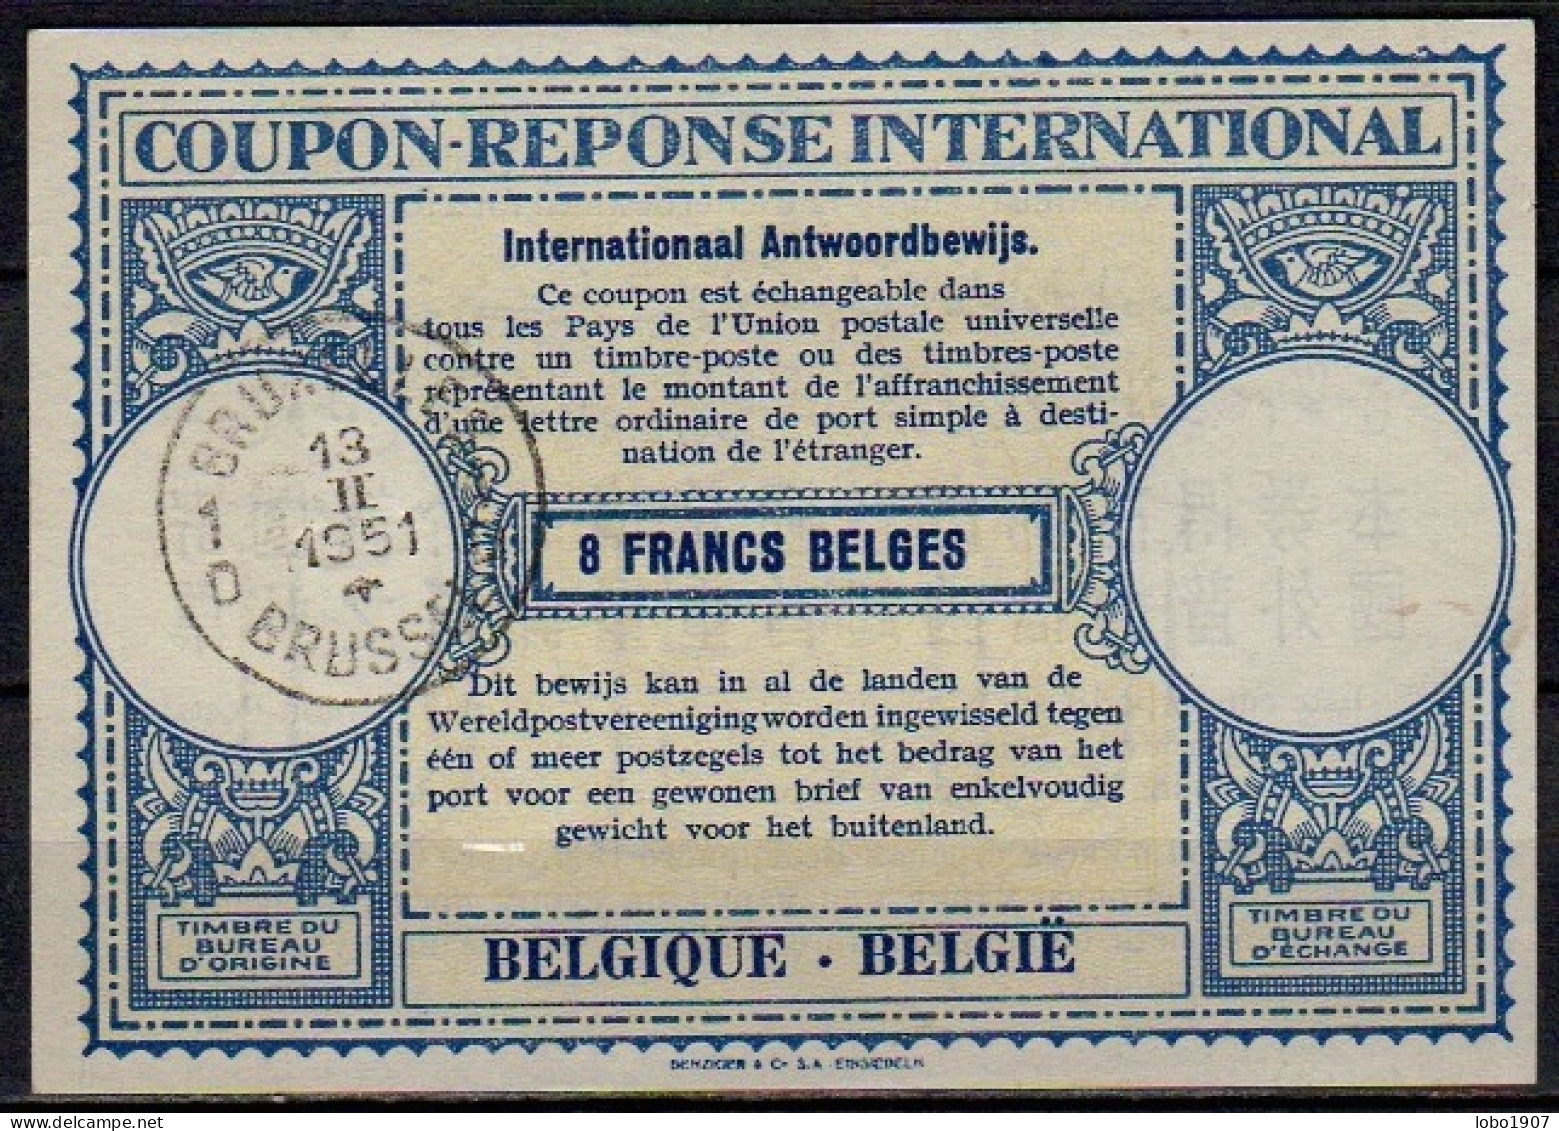 BELGIQUE BELGIE BELGIUM 1951, Lo15  8 FRANCS BELGES International Reply Coupon Reponse Antwortschein IAS IRC  O BRUXELLE - Internationale Antwoordcoupons